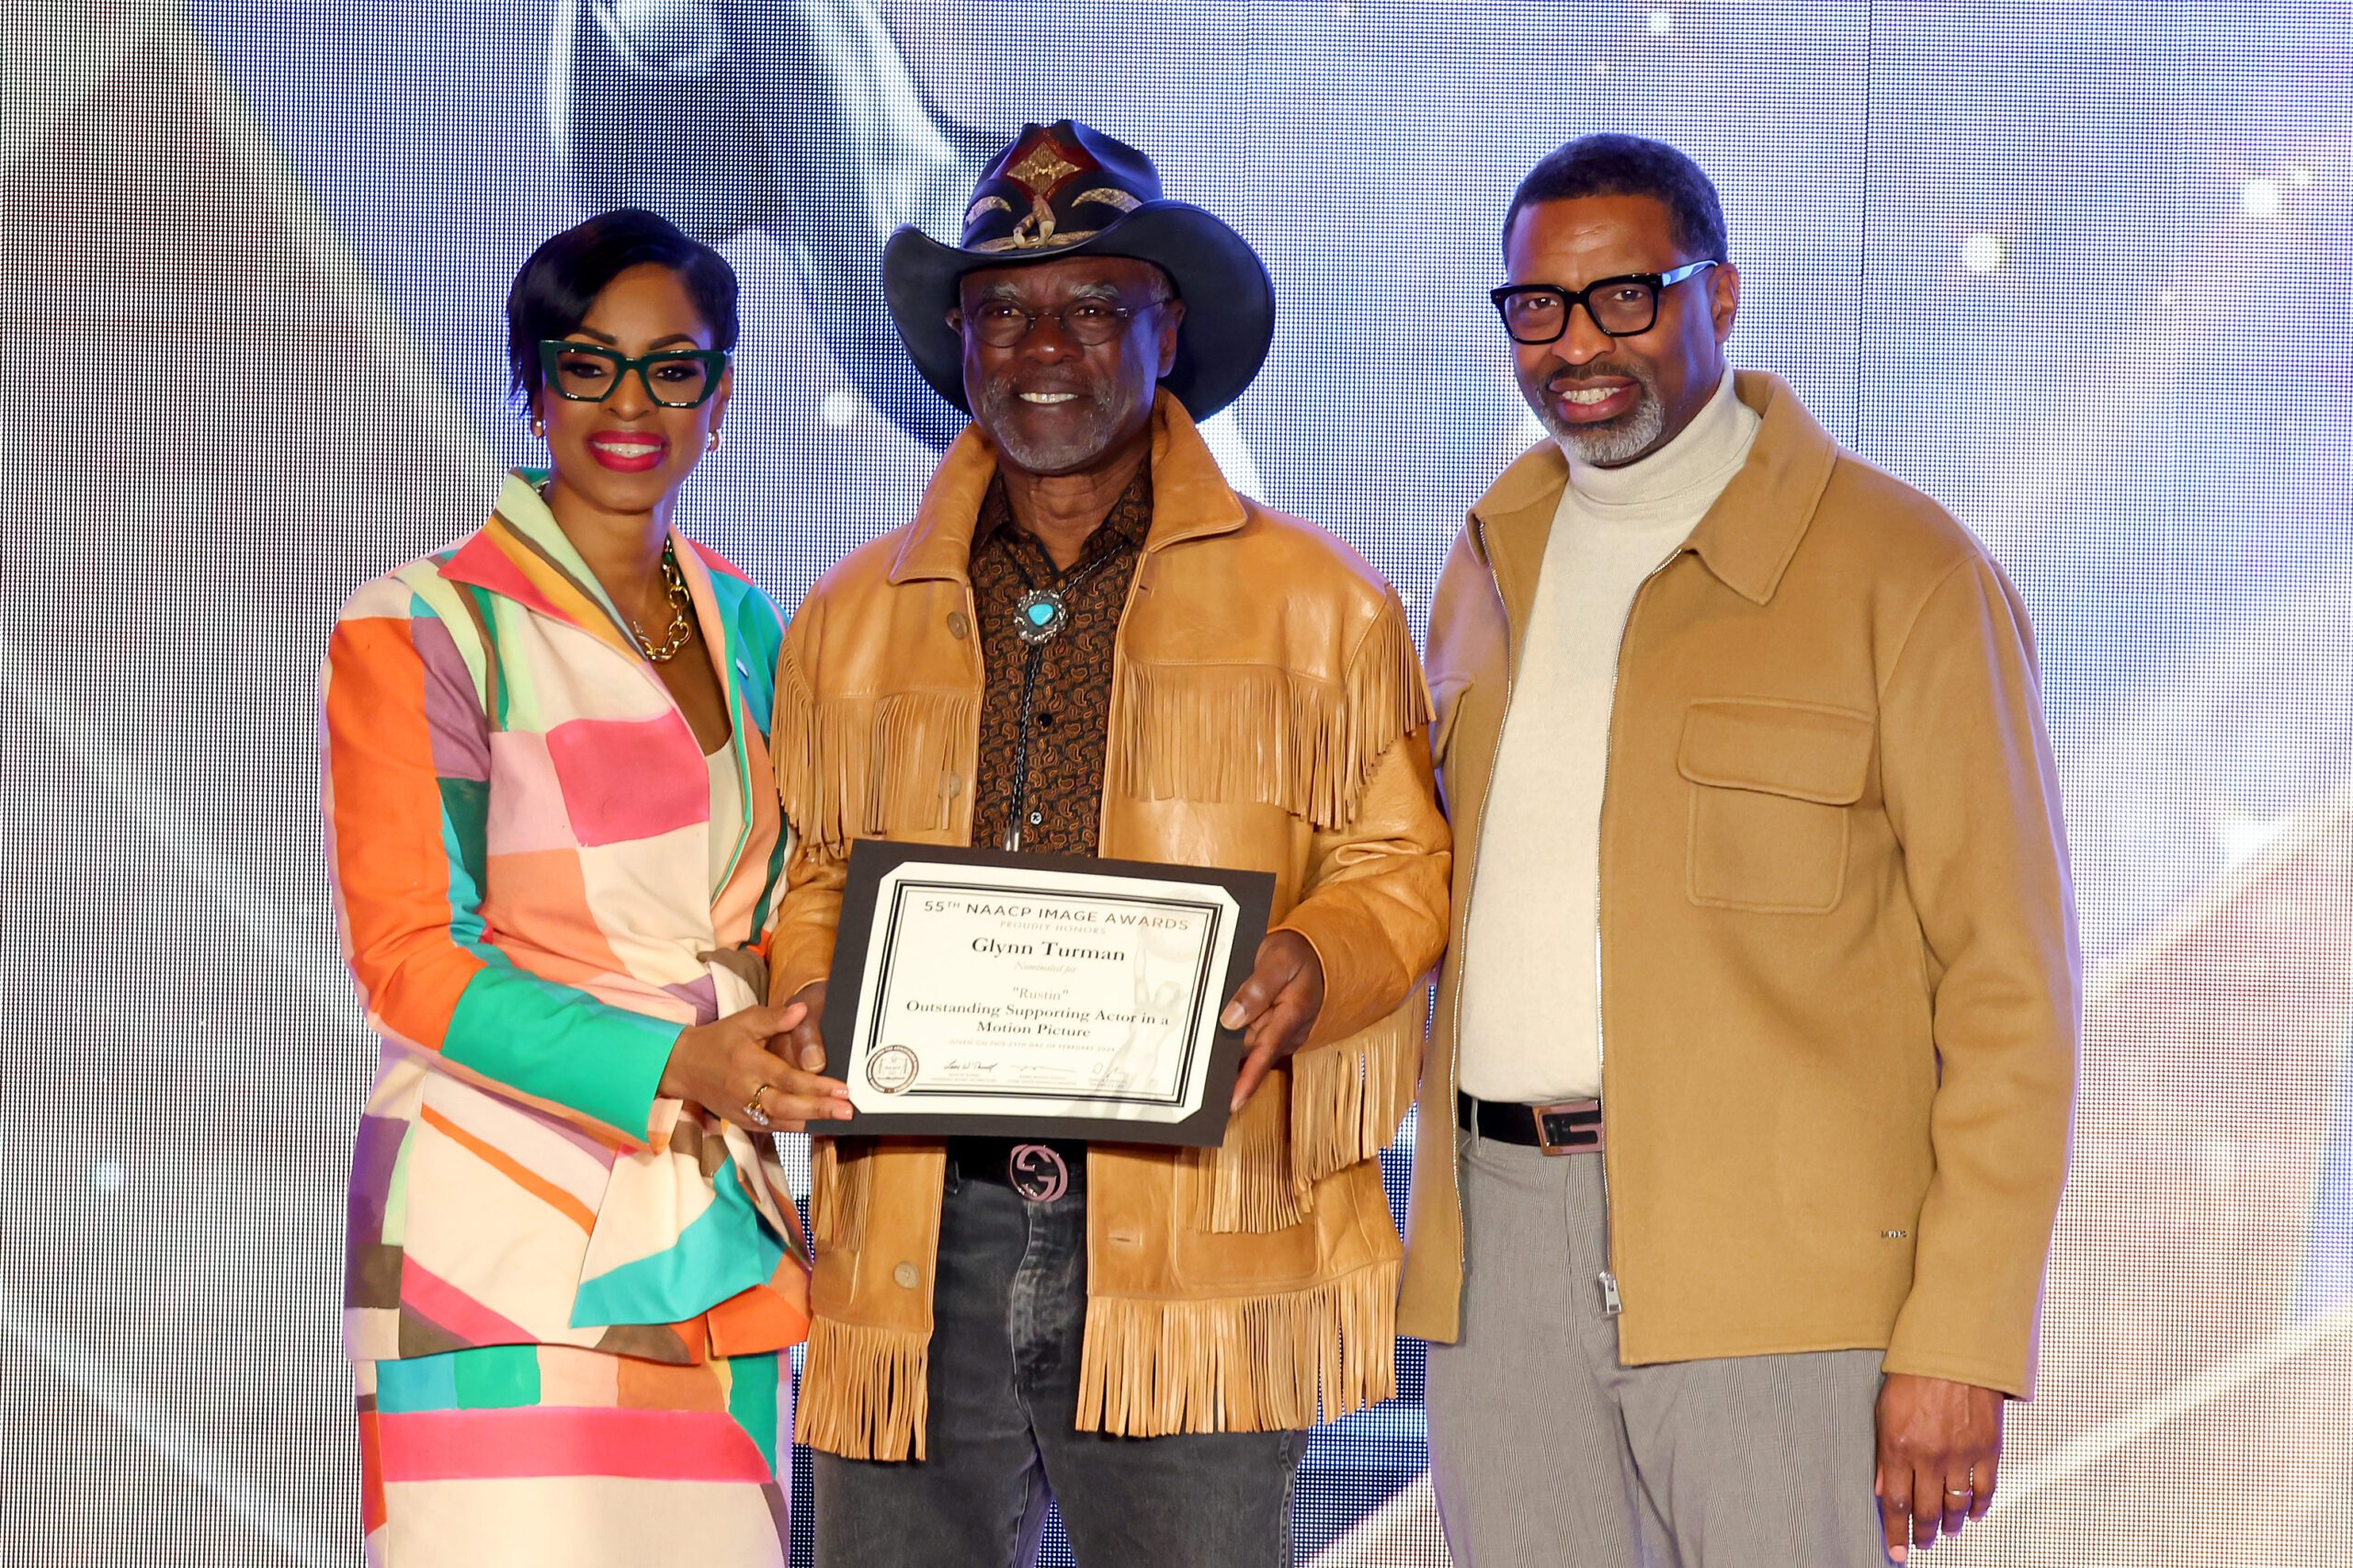 NAACP Image Awards  Host Nominees Gospel Brunch 